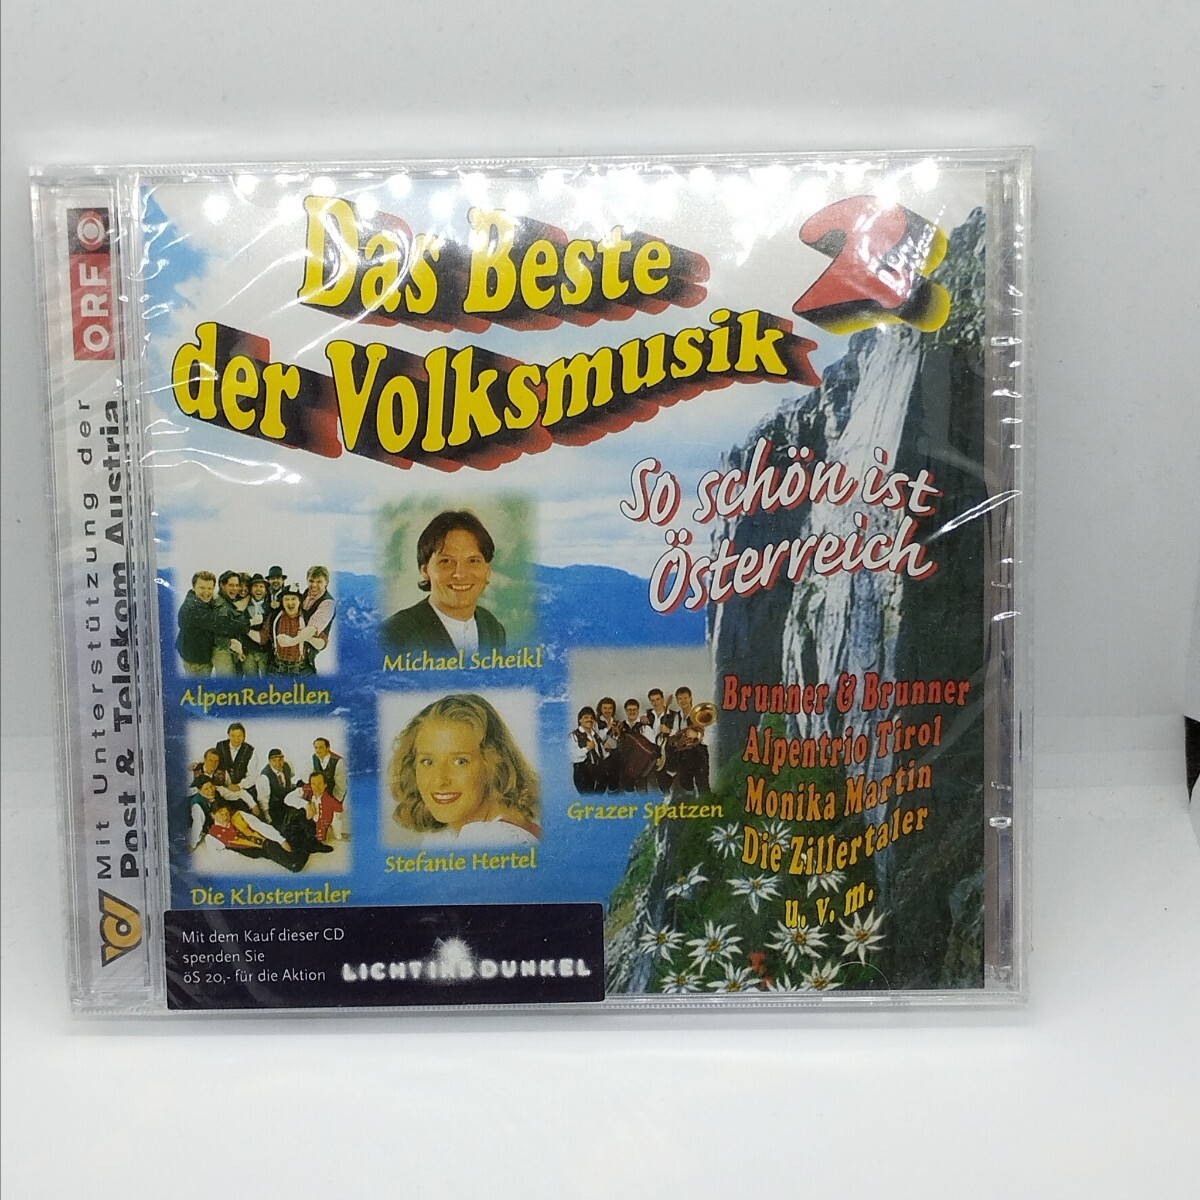 送料180円 V/A Das Beste der Volksmusik 2 / 欧州 民族音楽 ステファニー・ヘルテル、 Grazer Spatzen、Die Klostertaler 他 オーストリア_画像1